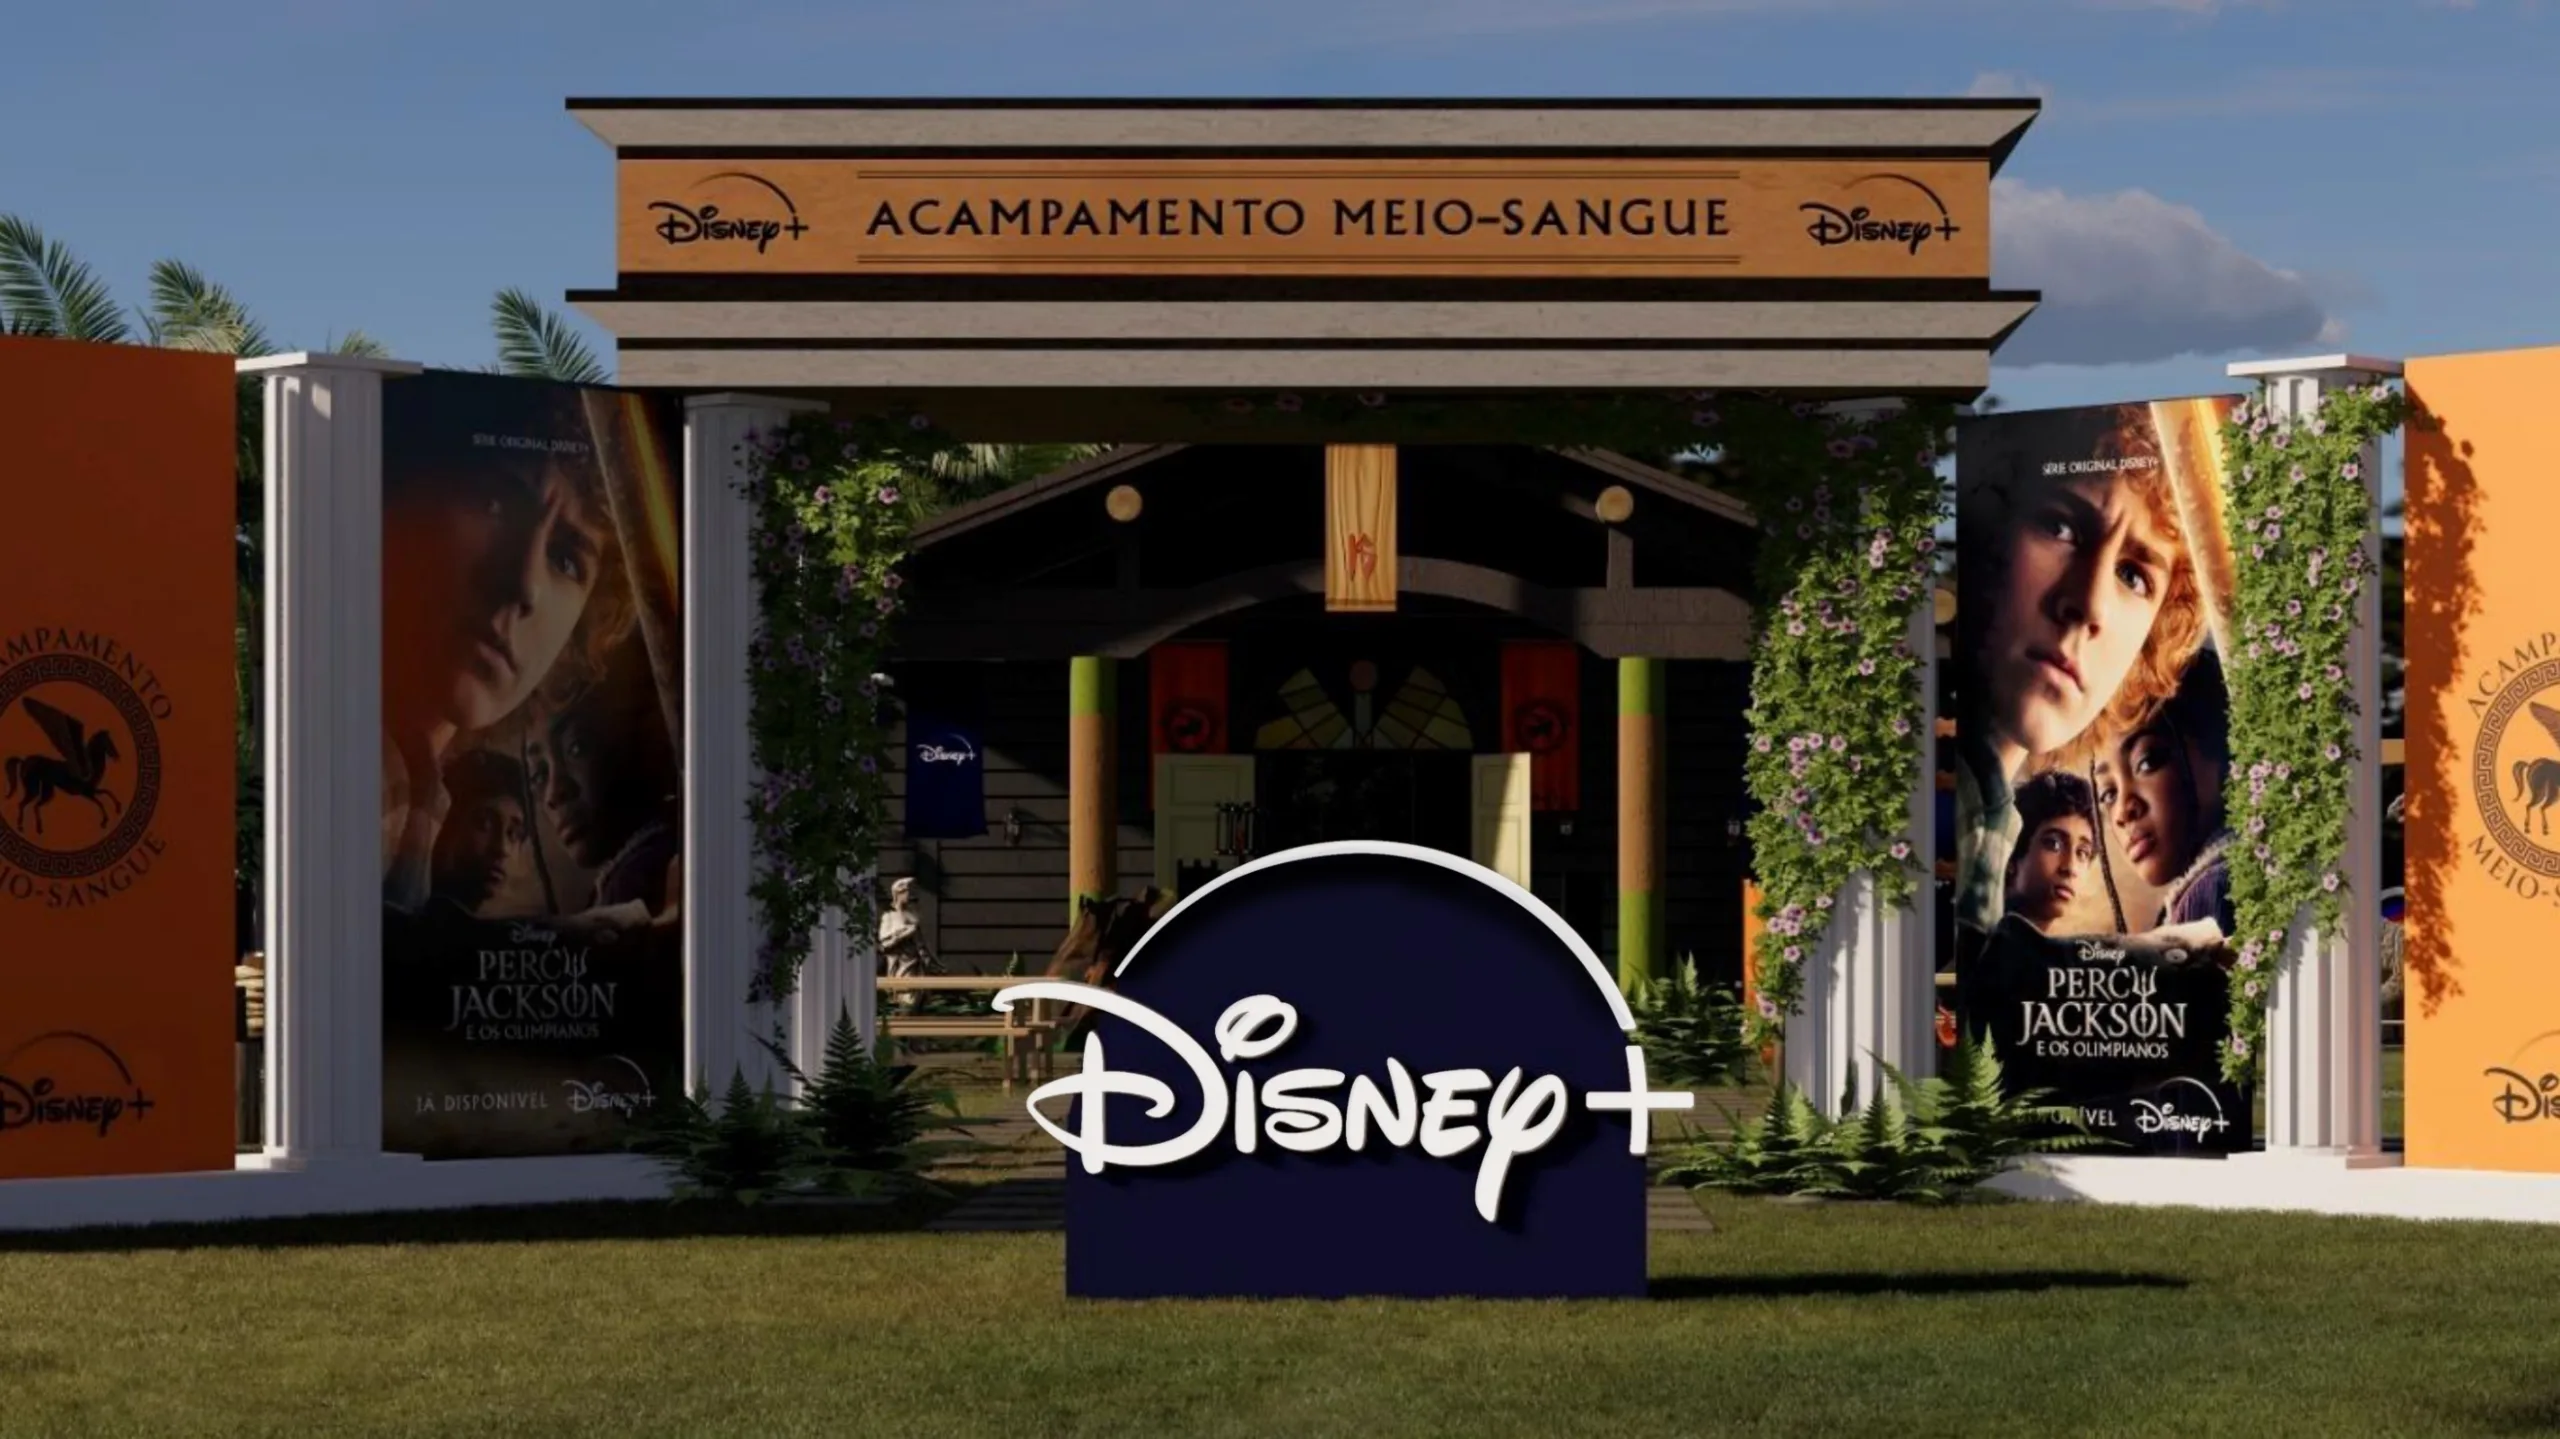 Disney lança acampamento "Percy Jackson e os Olimpianos" em São Paulo